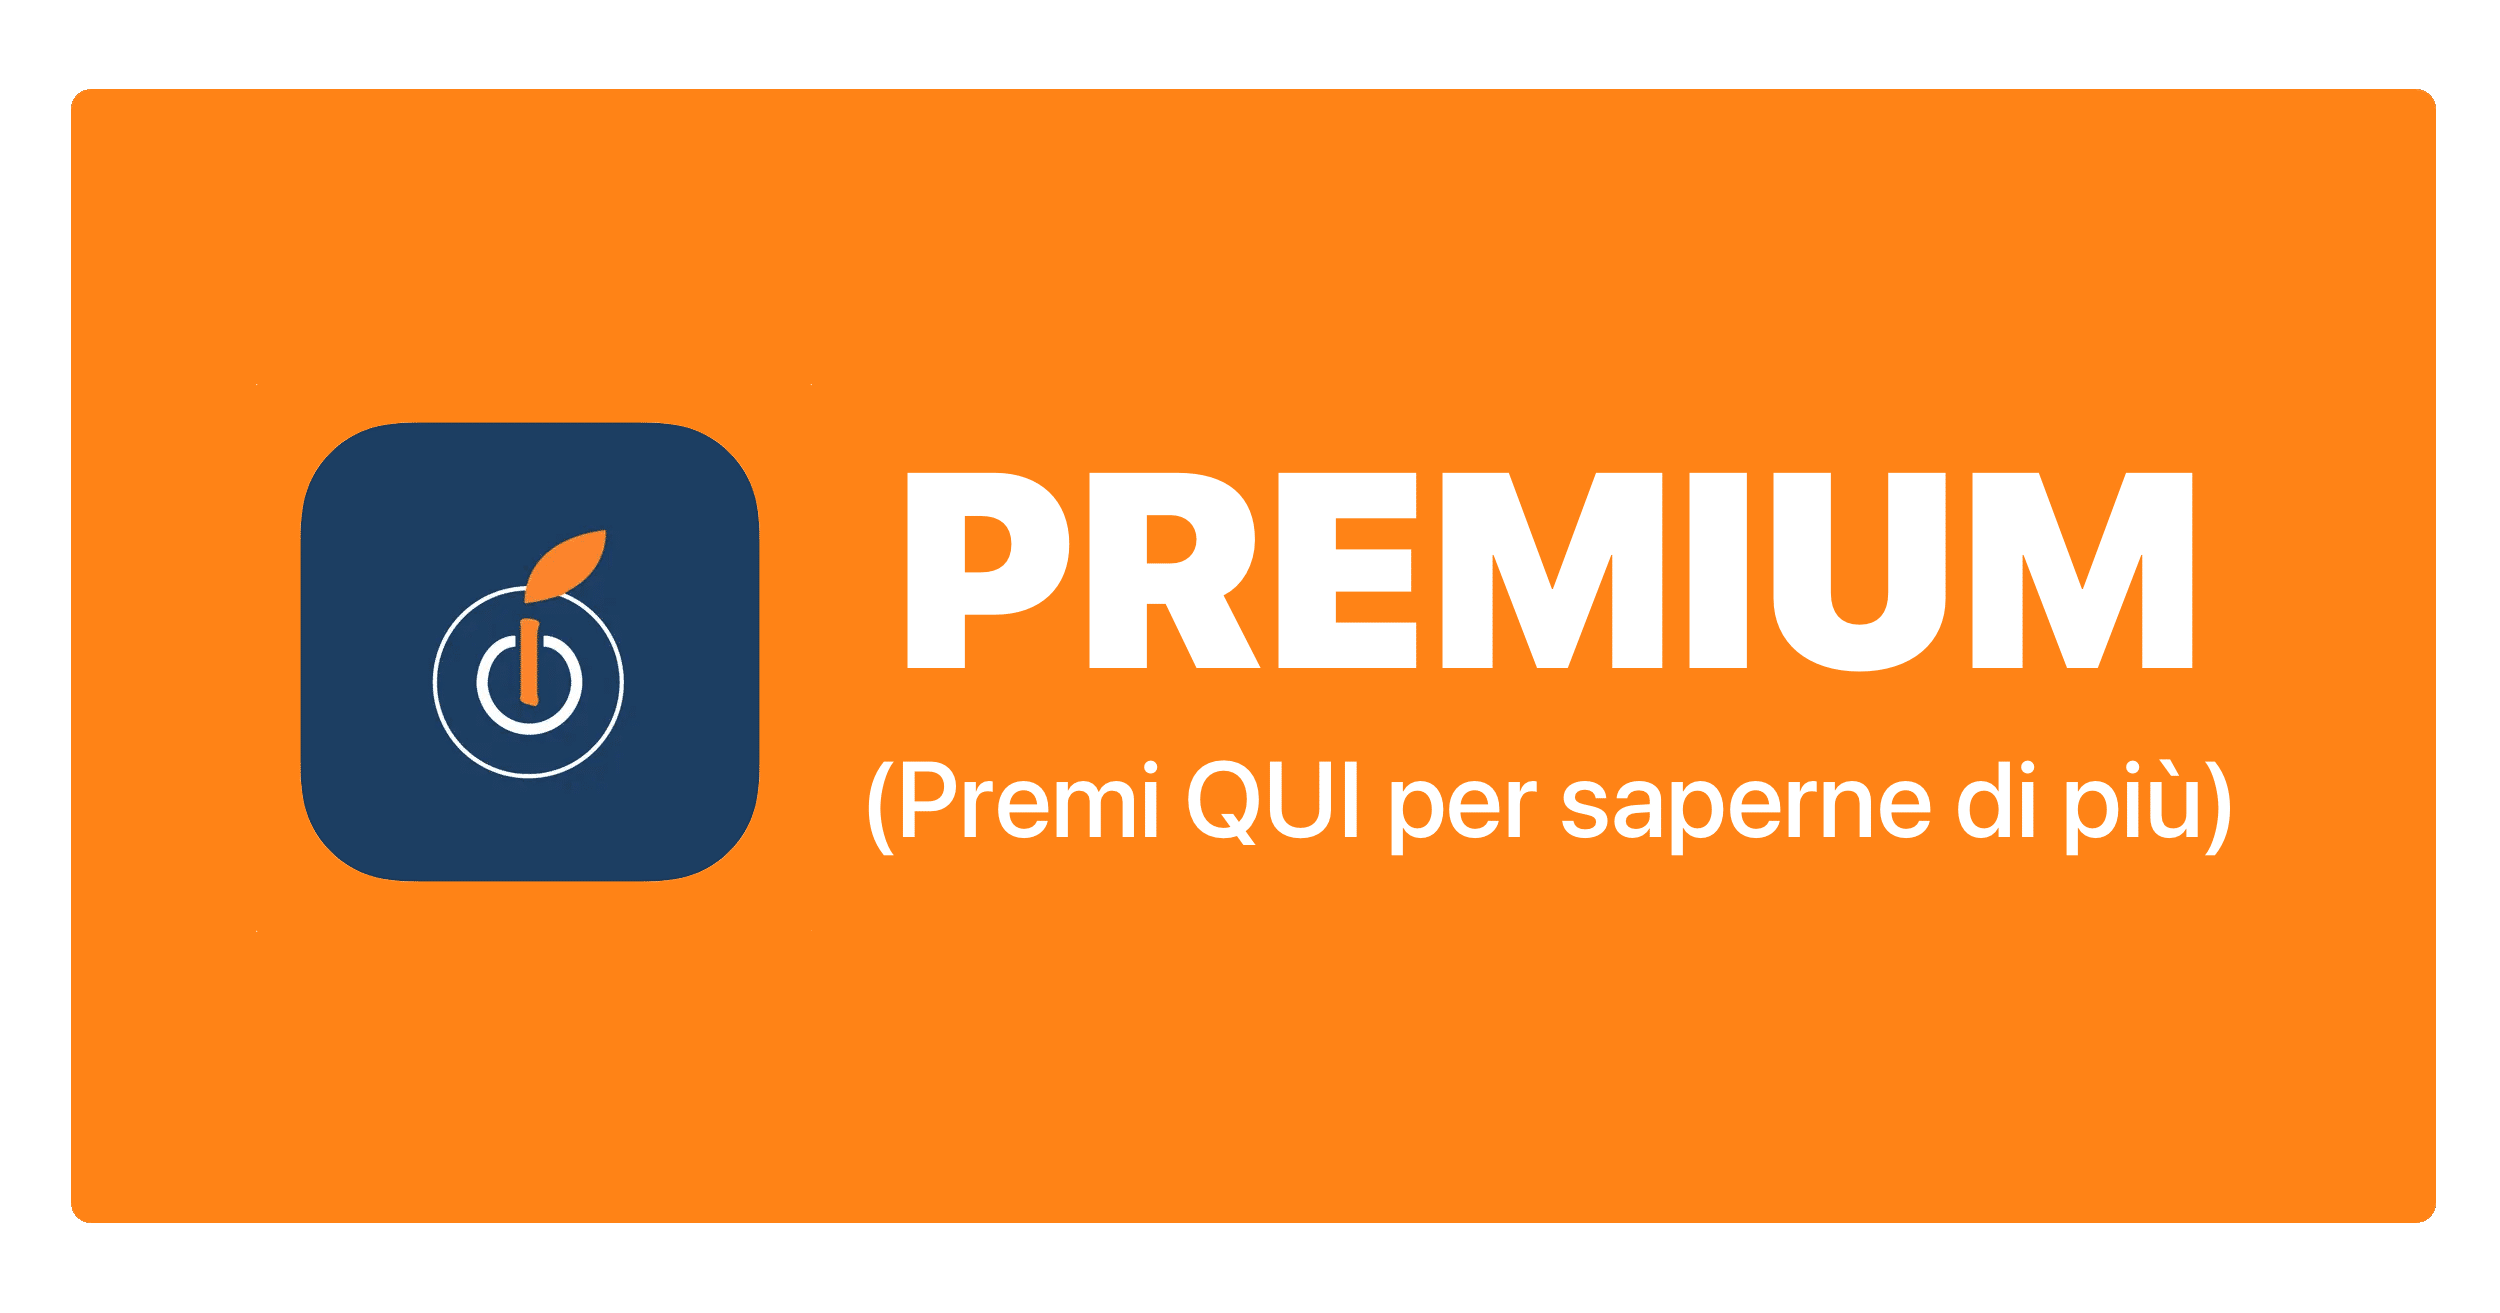 iAppZein PREMIUM – il nuovo servizio per gli utenti iPhone